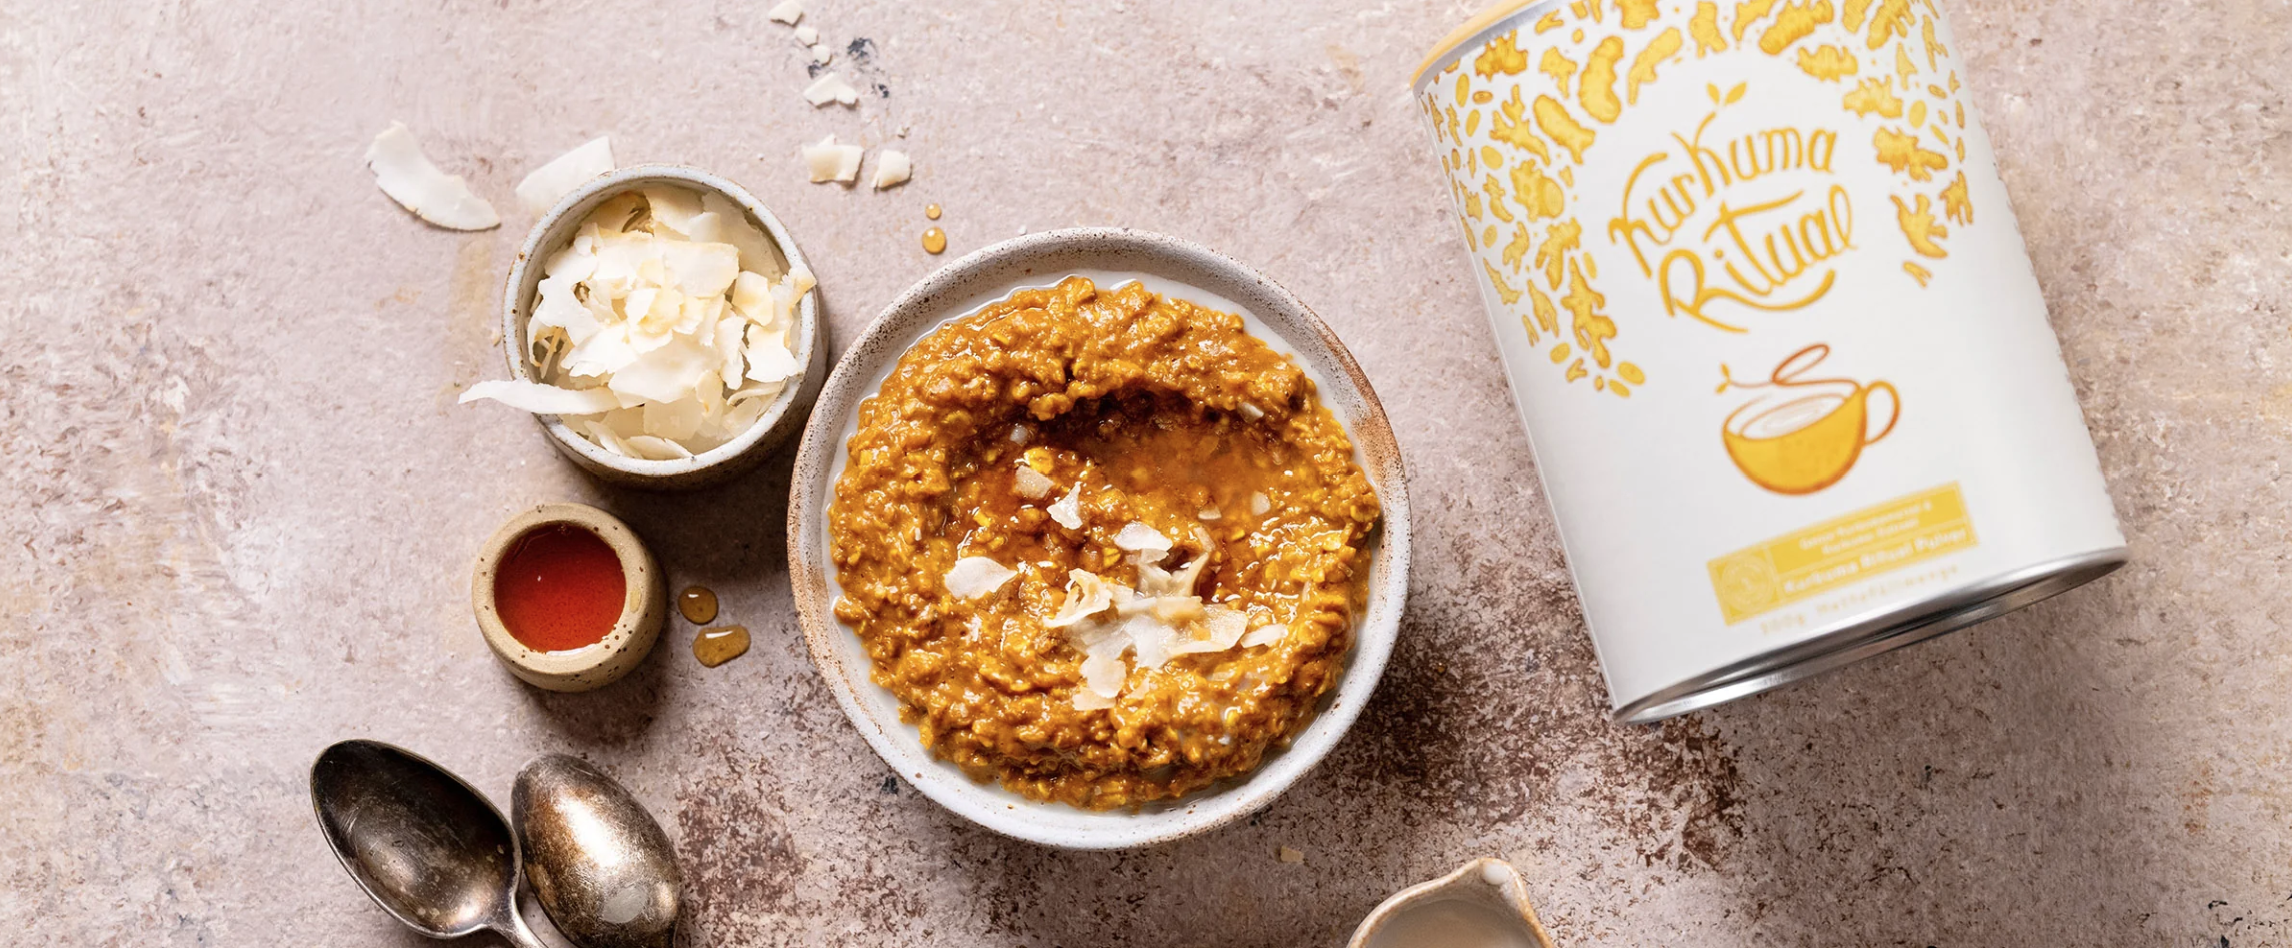 Porridge dorato: riscalda dall’interno e rafforza le difese